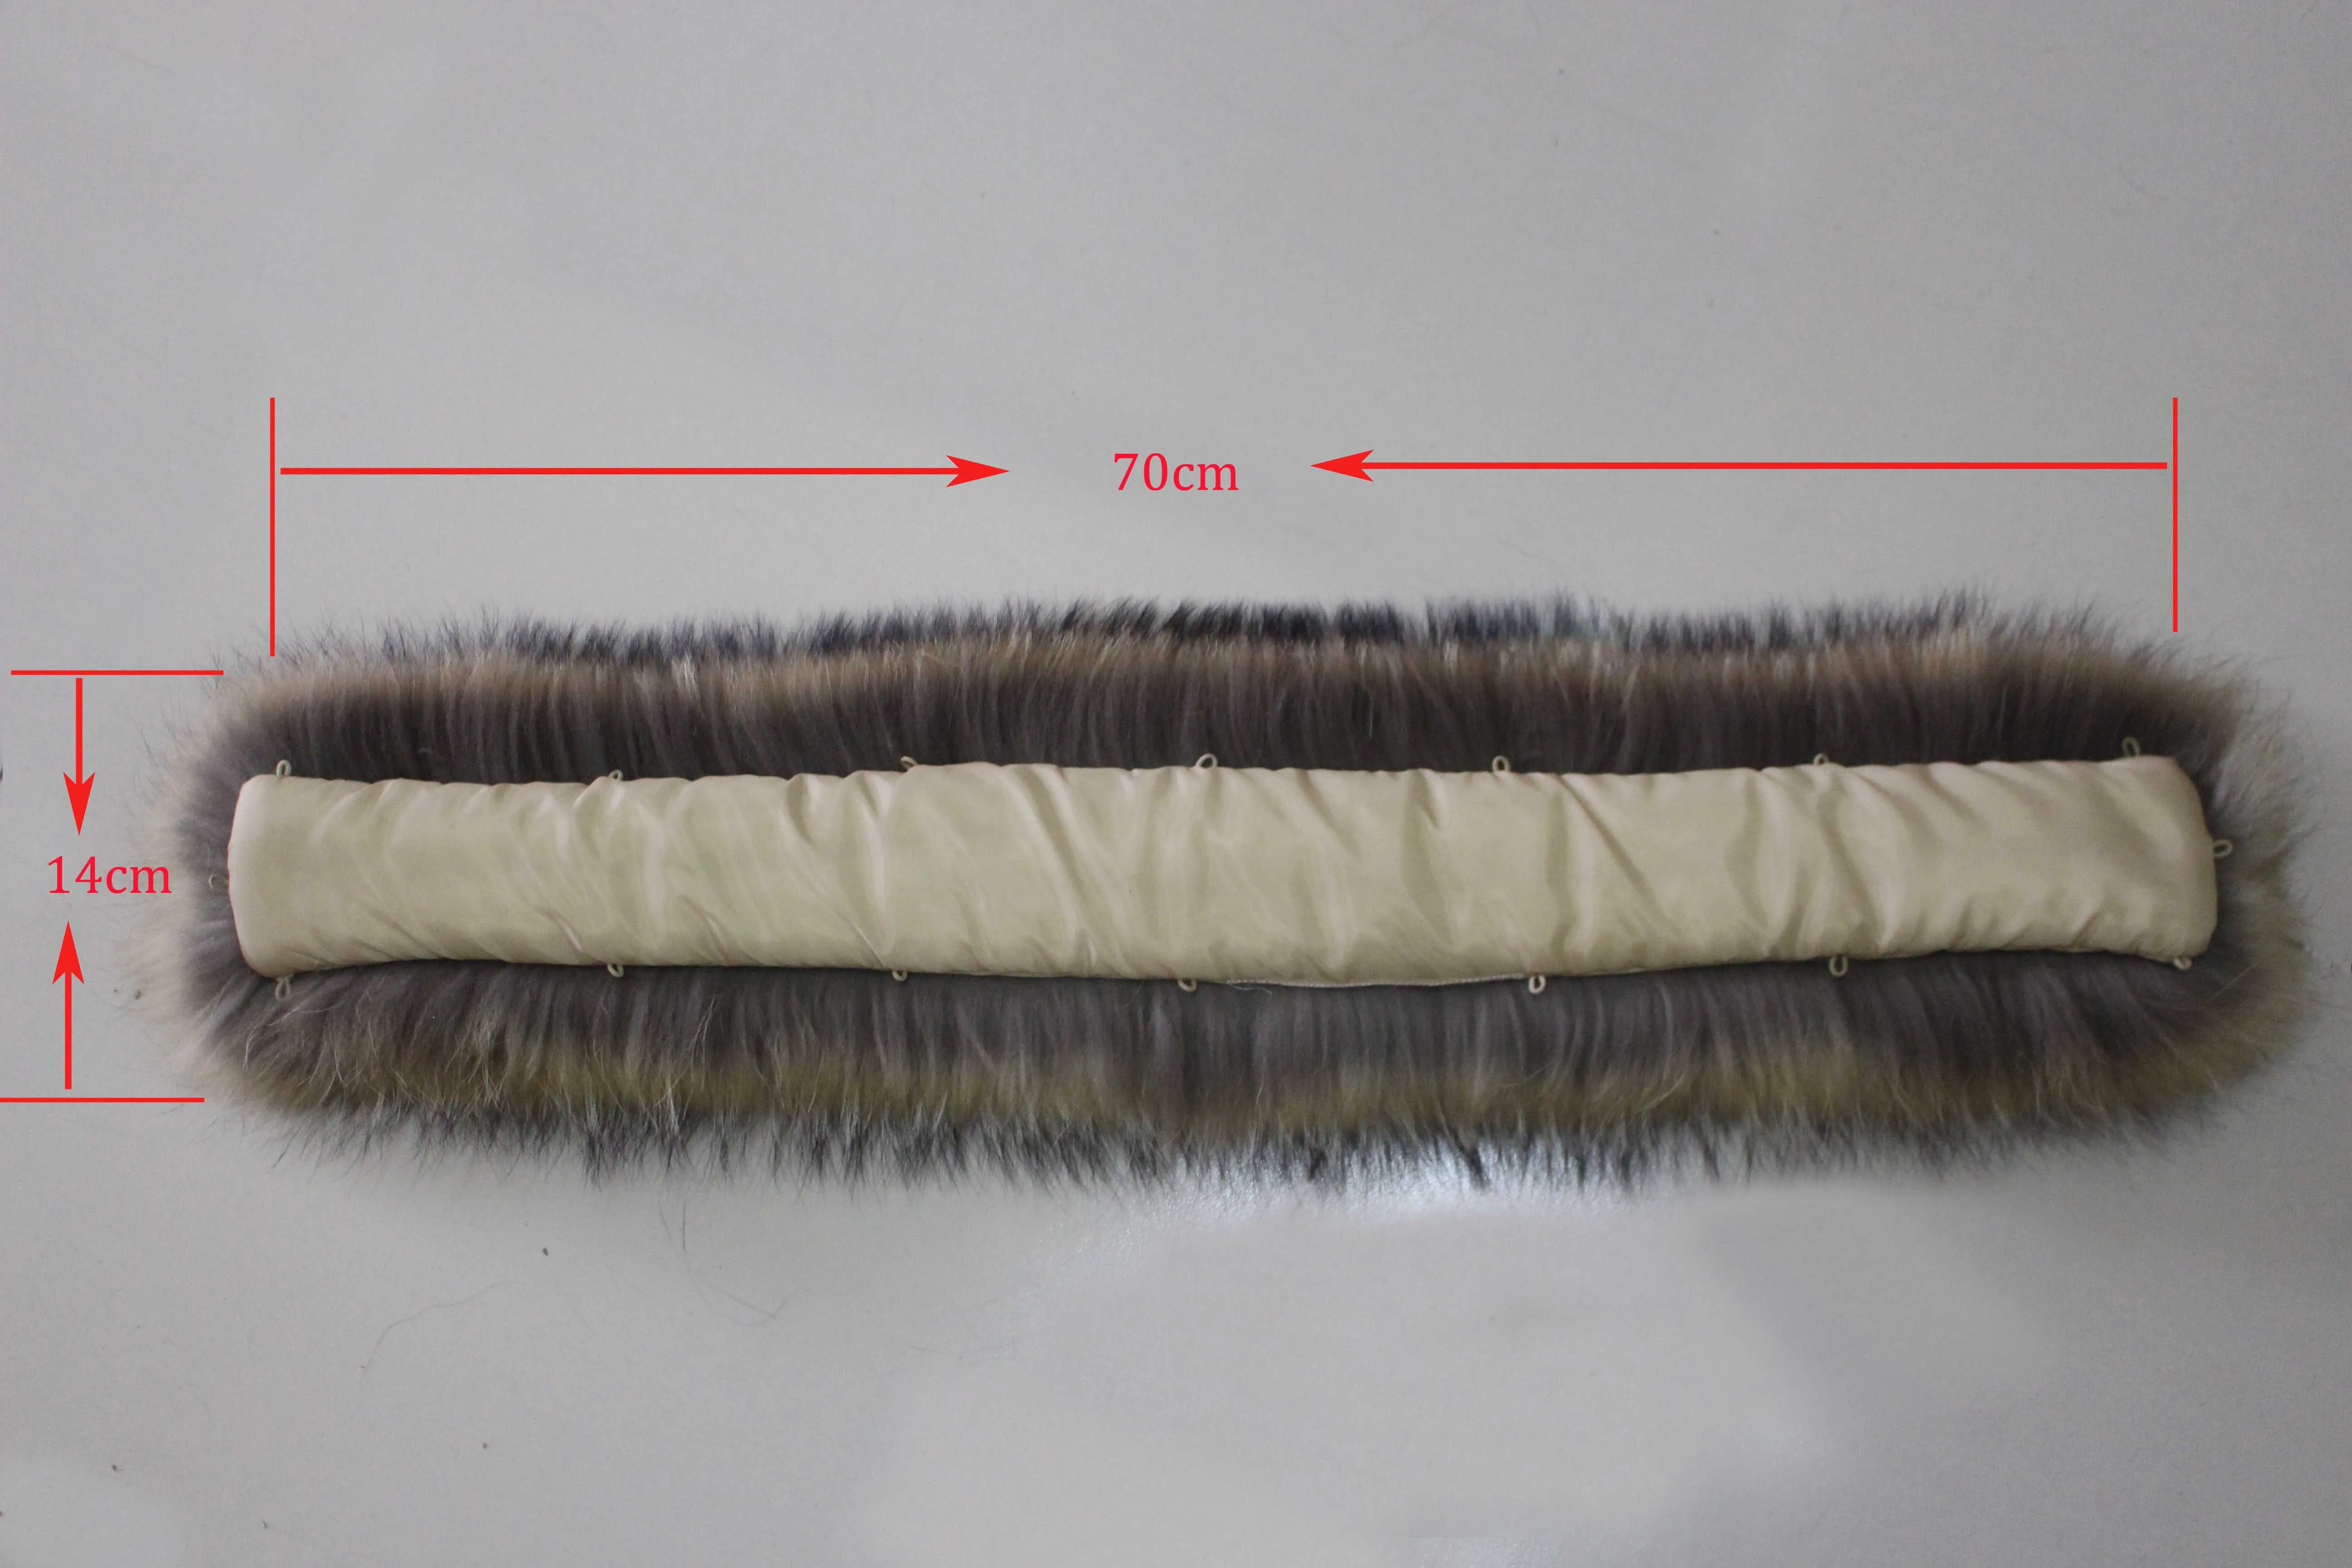 Linhaoshengyue 70 см Зимний натуральный мех енота капюшон воротник, высокое качество мех енота модное пальто воротник шапка воротник